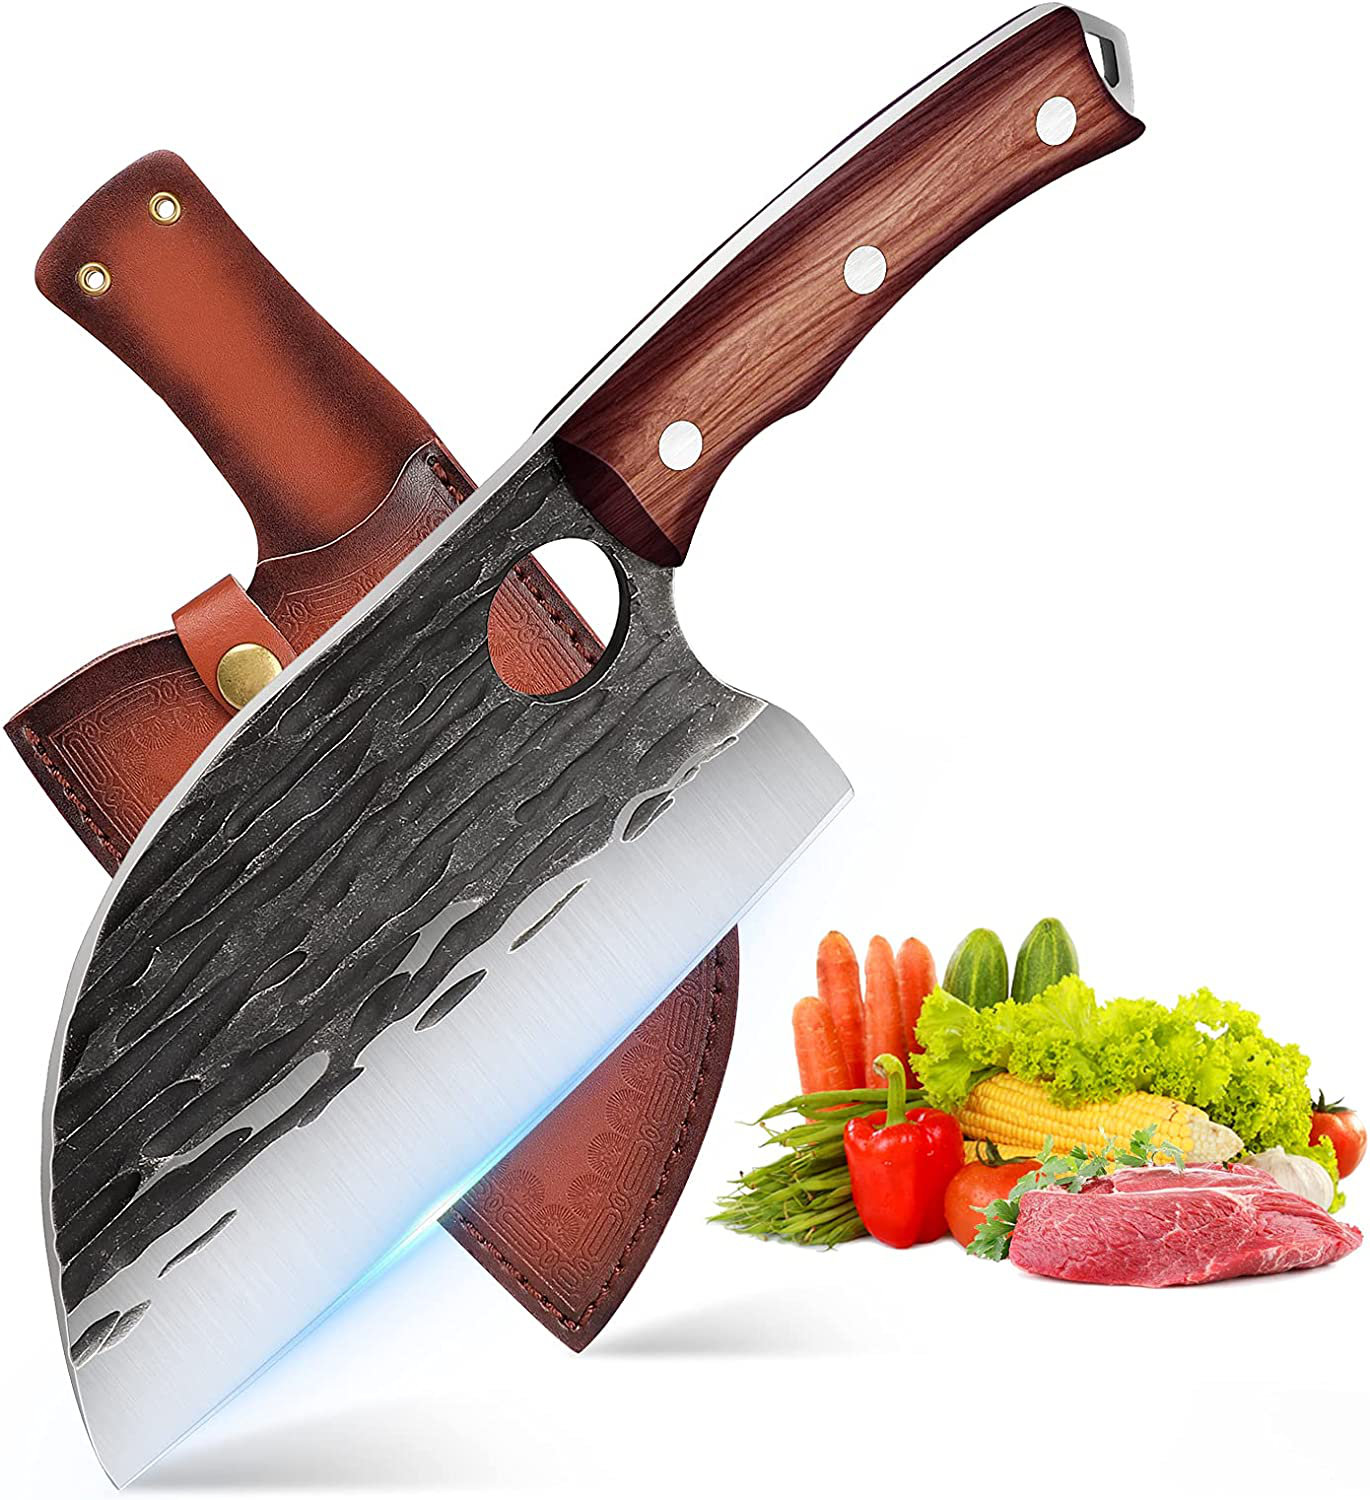 https://assets.wfcdn.com/im/36508586/compr-r85/2334/233483564/c-g-outdoors-65-chefs-knife.jpg